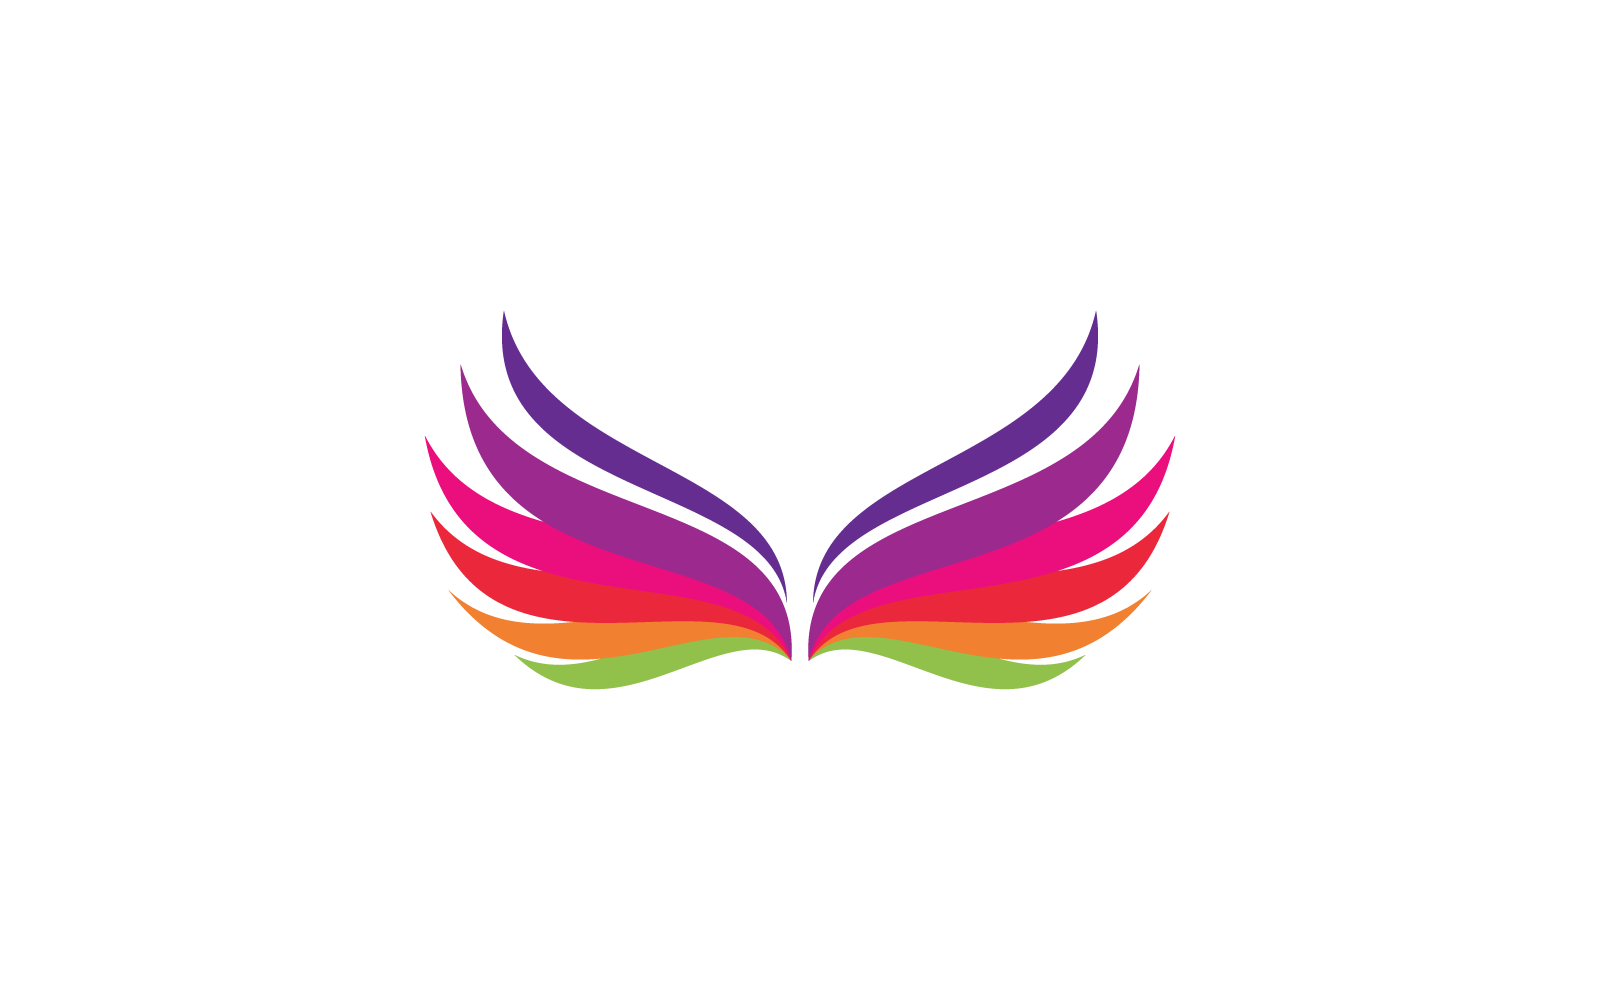 Wing illustration logo vector illustration design